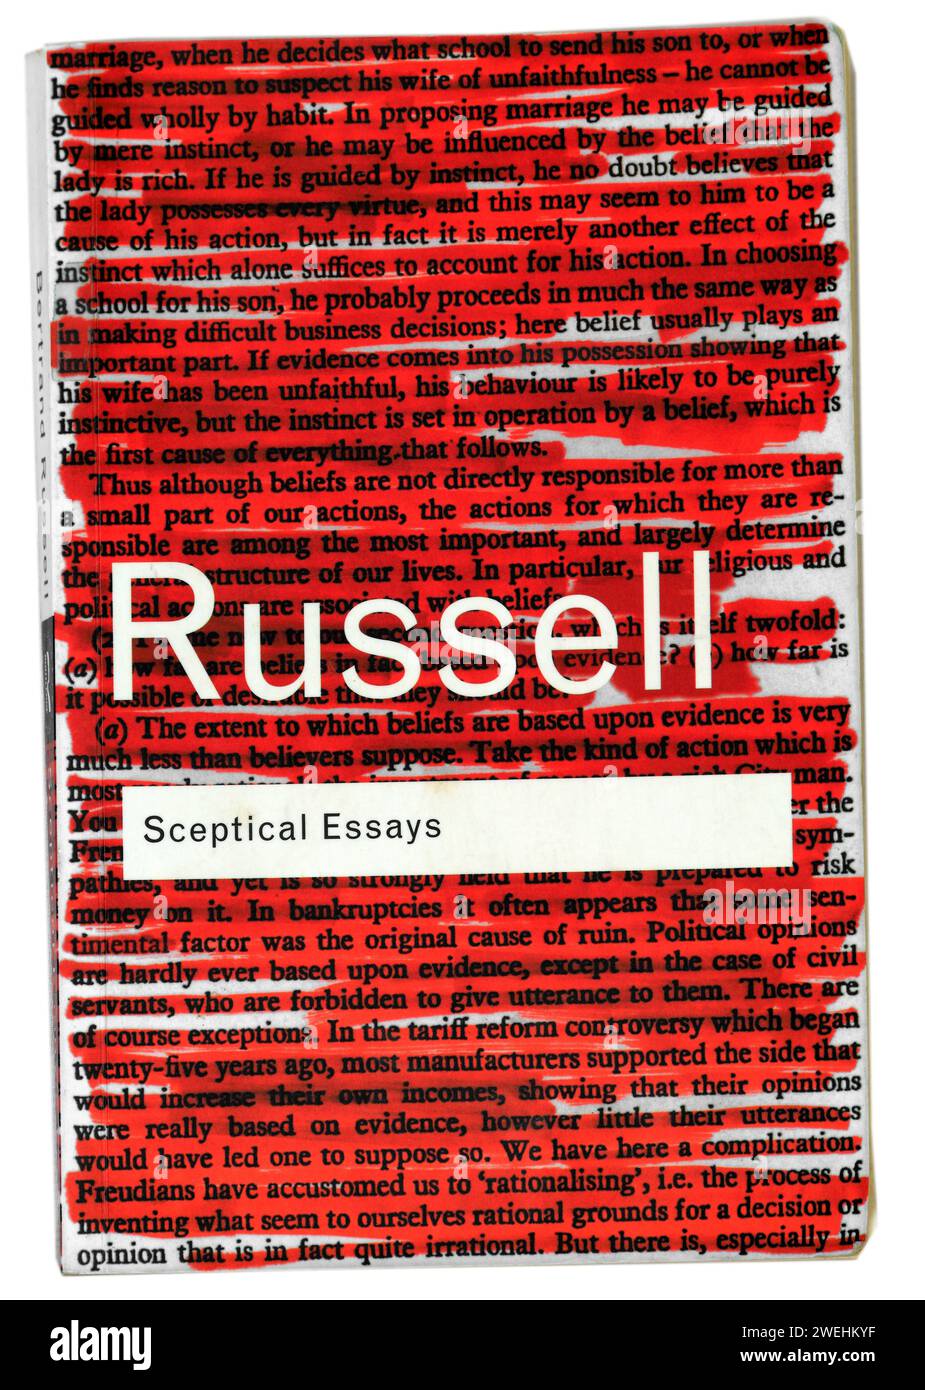 Bertrand Russell, couverture de livre d'essais sceptiques. Studio mis en place sur fond clair / blanc Banque D'Images